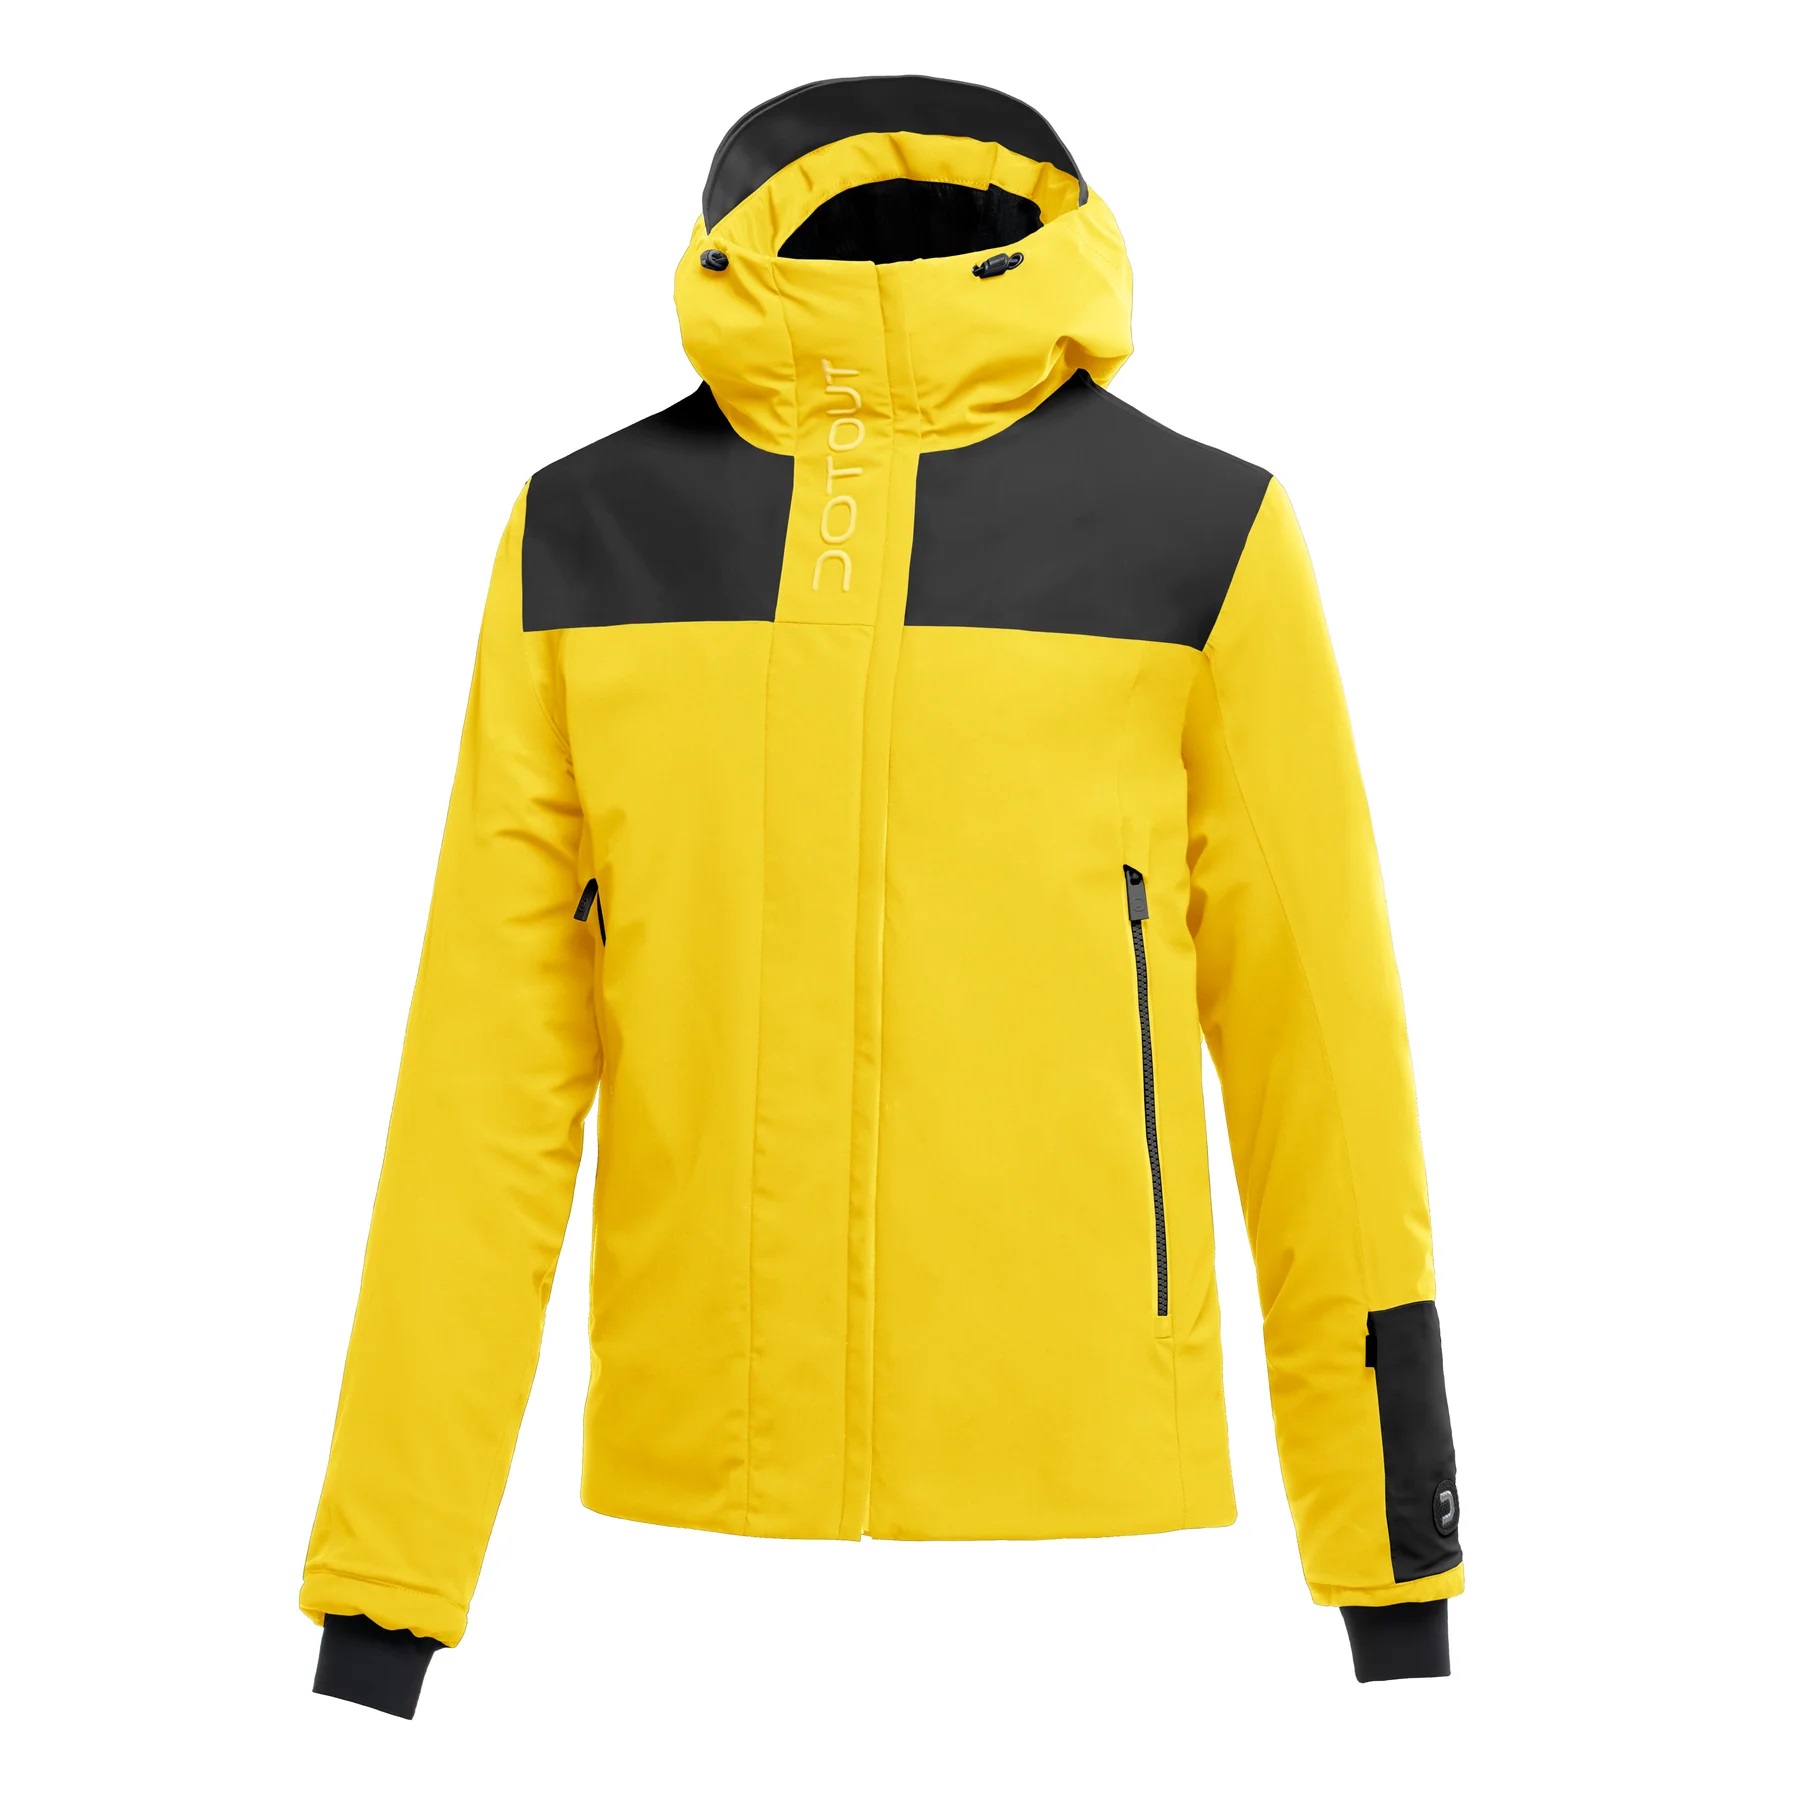  Ski & Snow Jackets -  dotout Rival Jacket